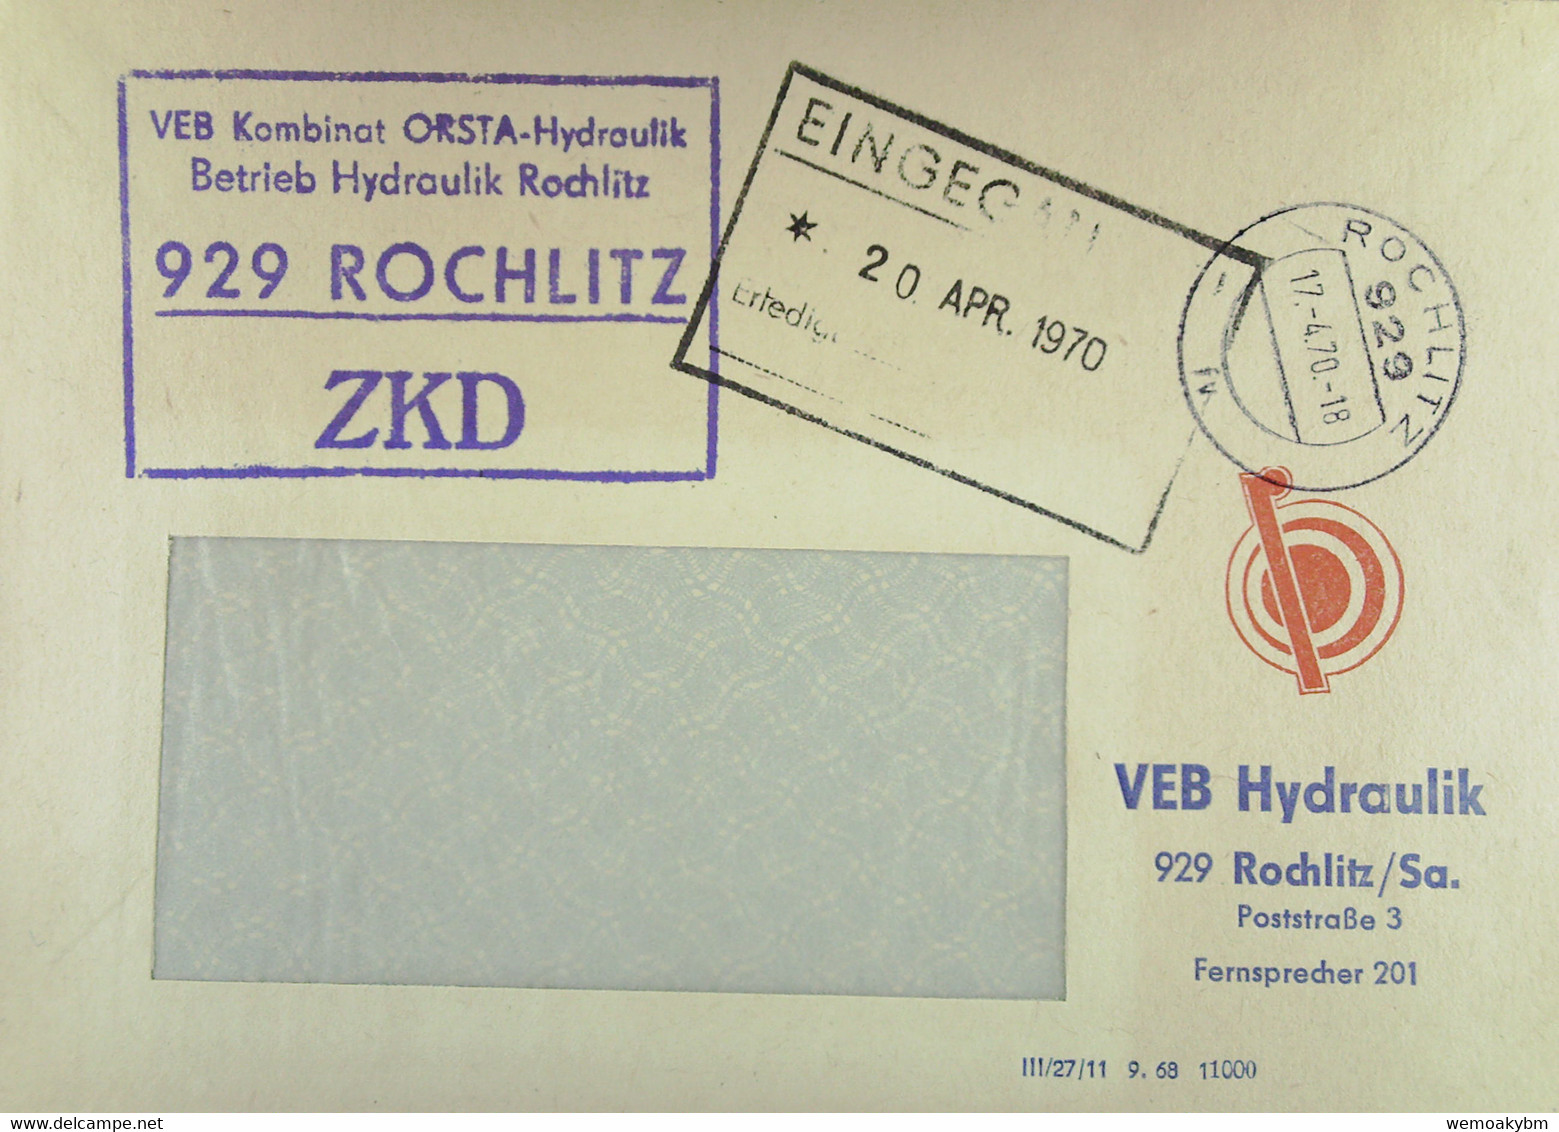 Fern-Brief Mit ZKD-Kastenstempel "VEB Kombinat OSTRA-Hydraulik Betrieb Hydraulik 929 ROCHLITZ" Vom 17.4.70 Nach Dresden - Storia Postale